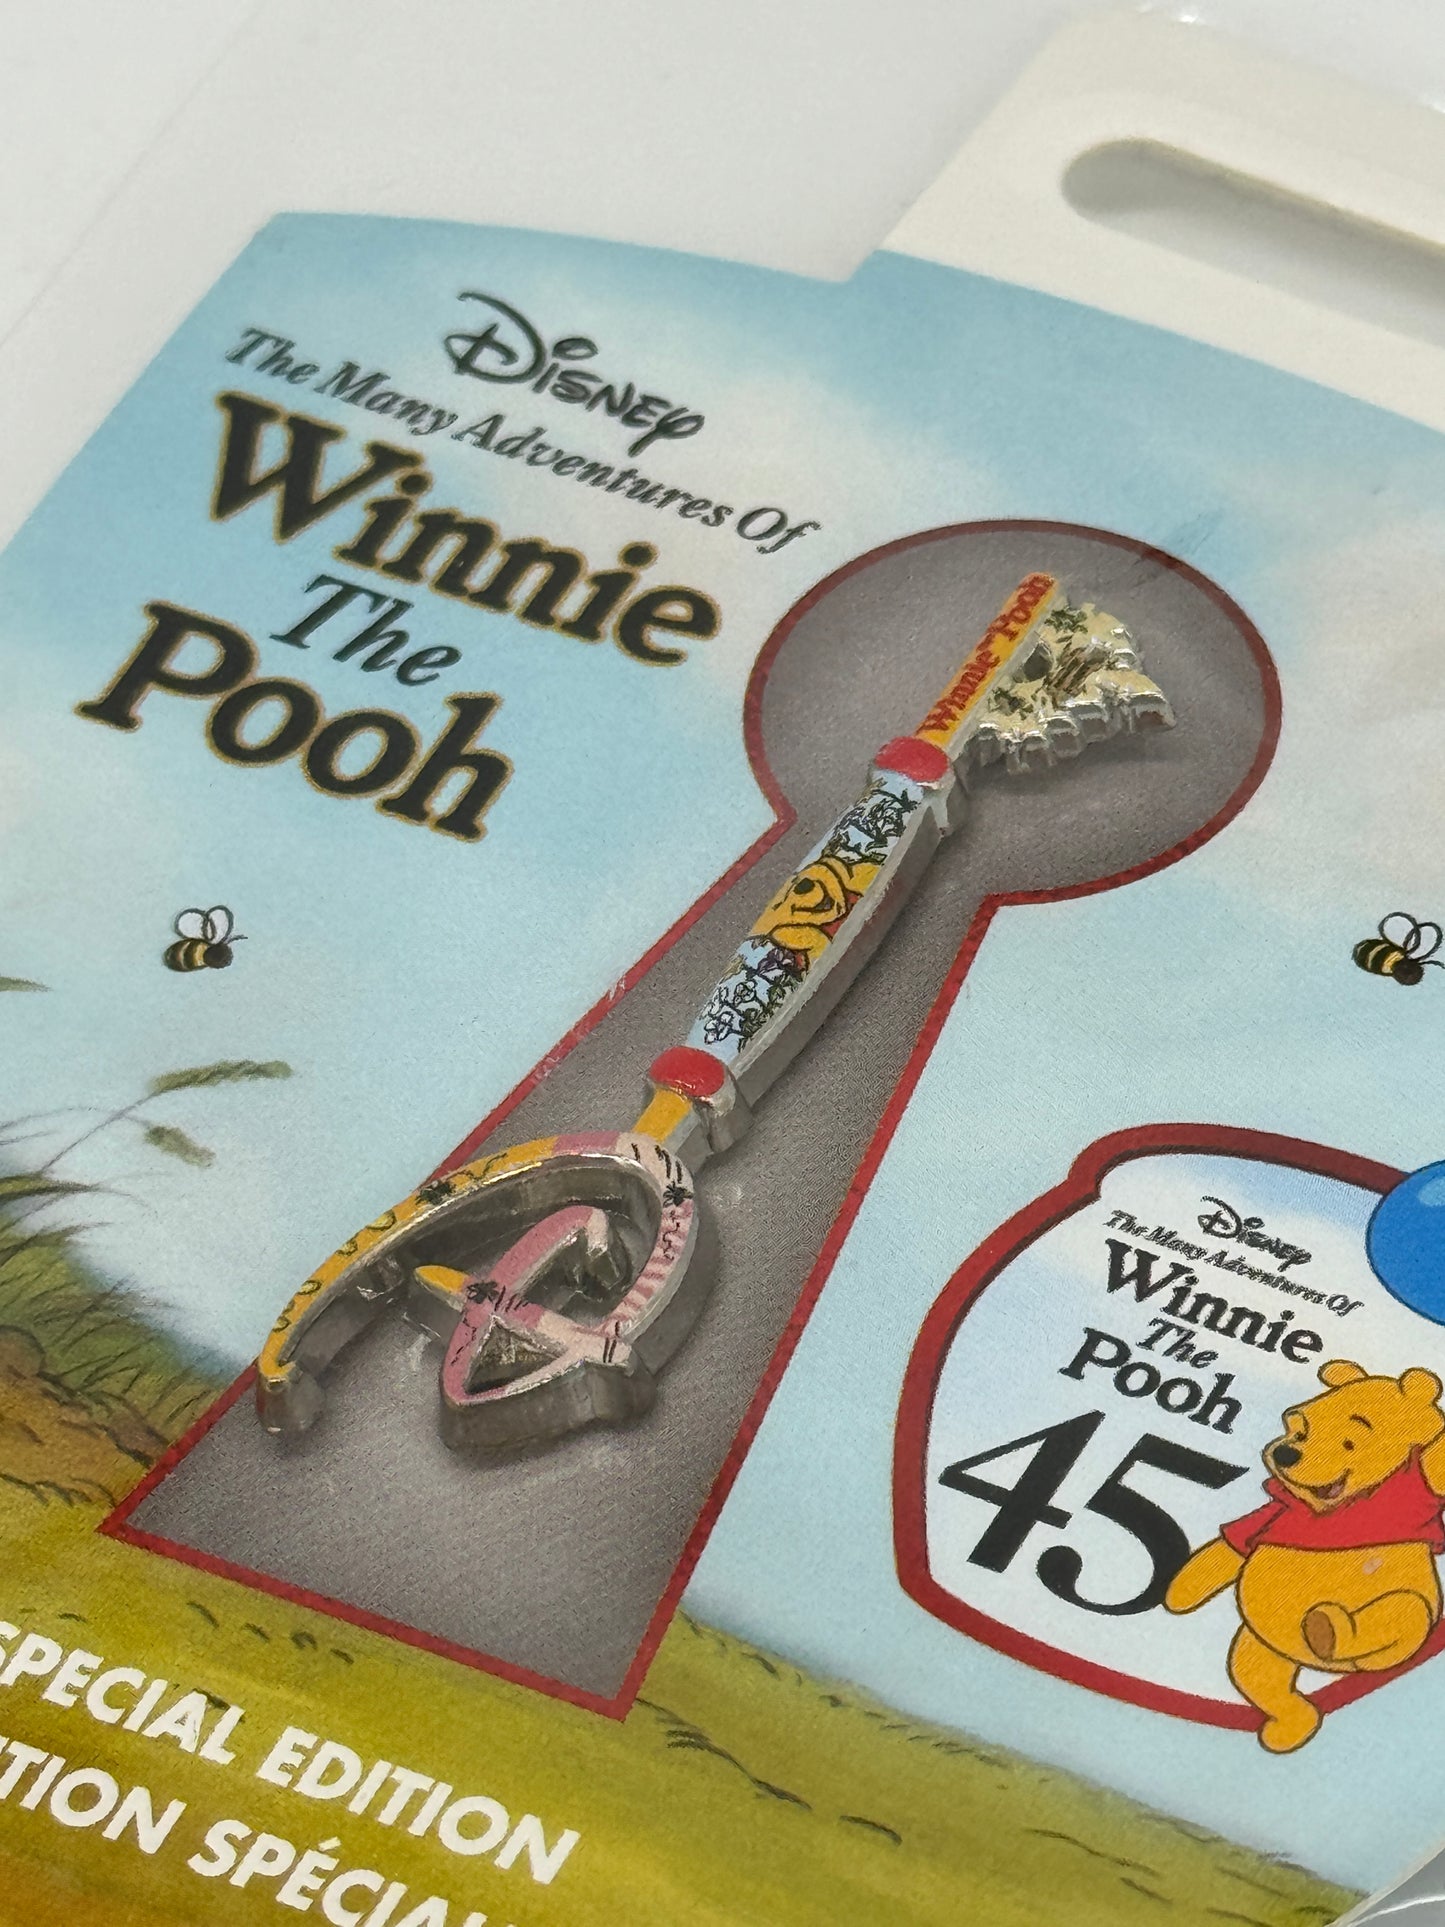 Disney Winnie the Pooh / Winnie Puuh "Schlüssel Anstecknadel" 45 Jahre Special Edition